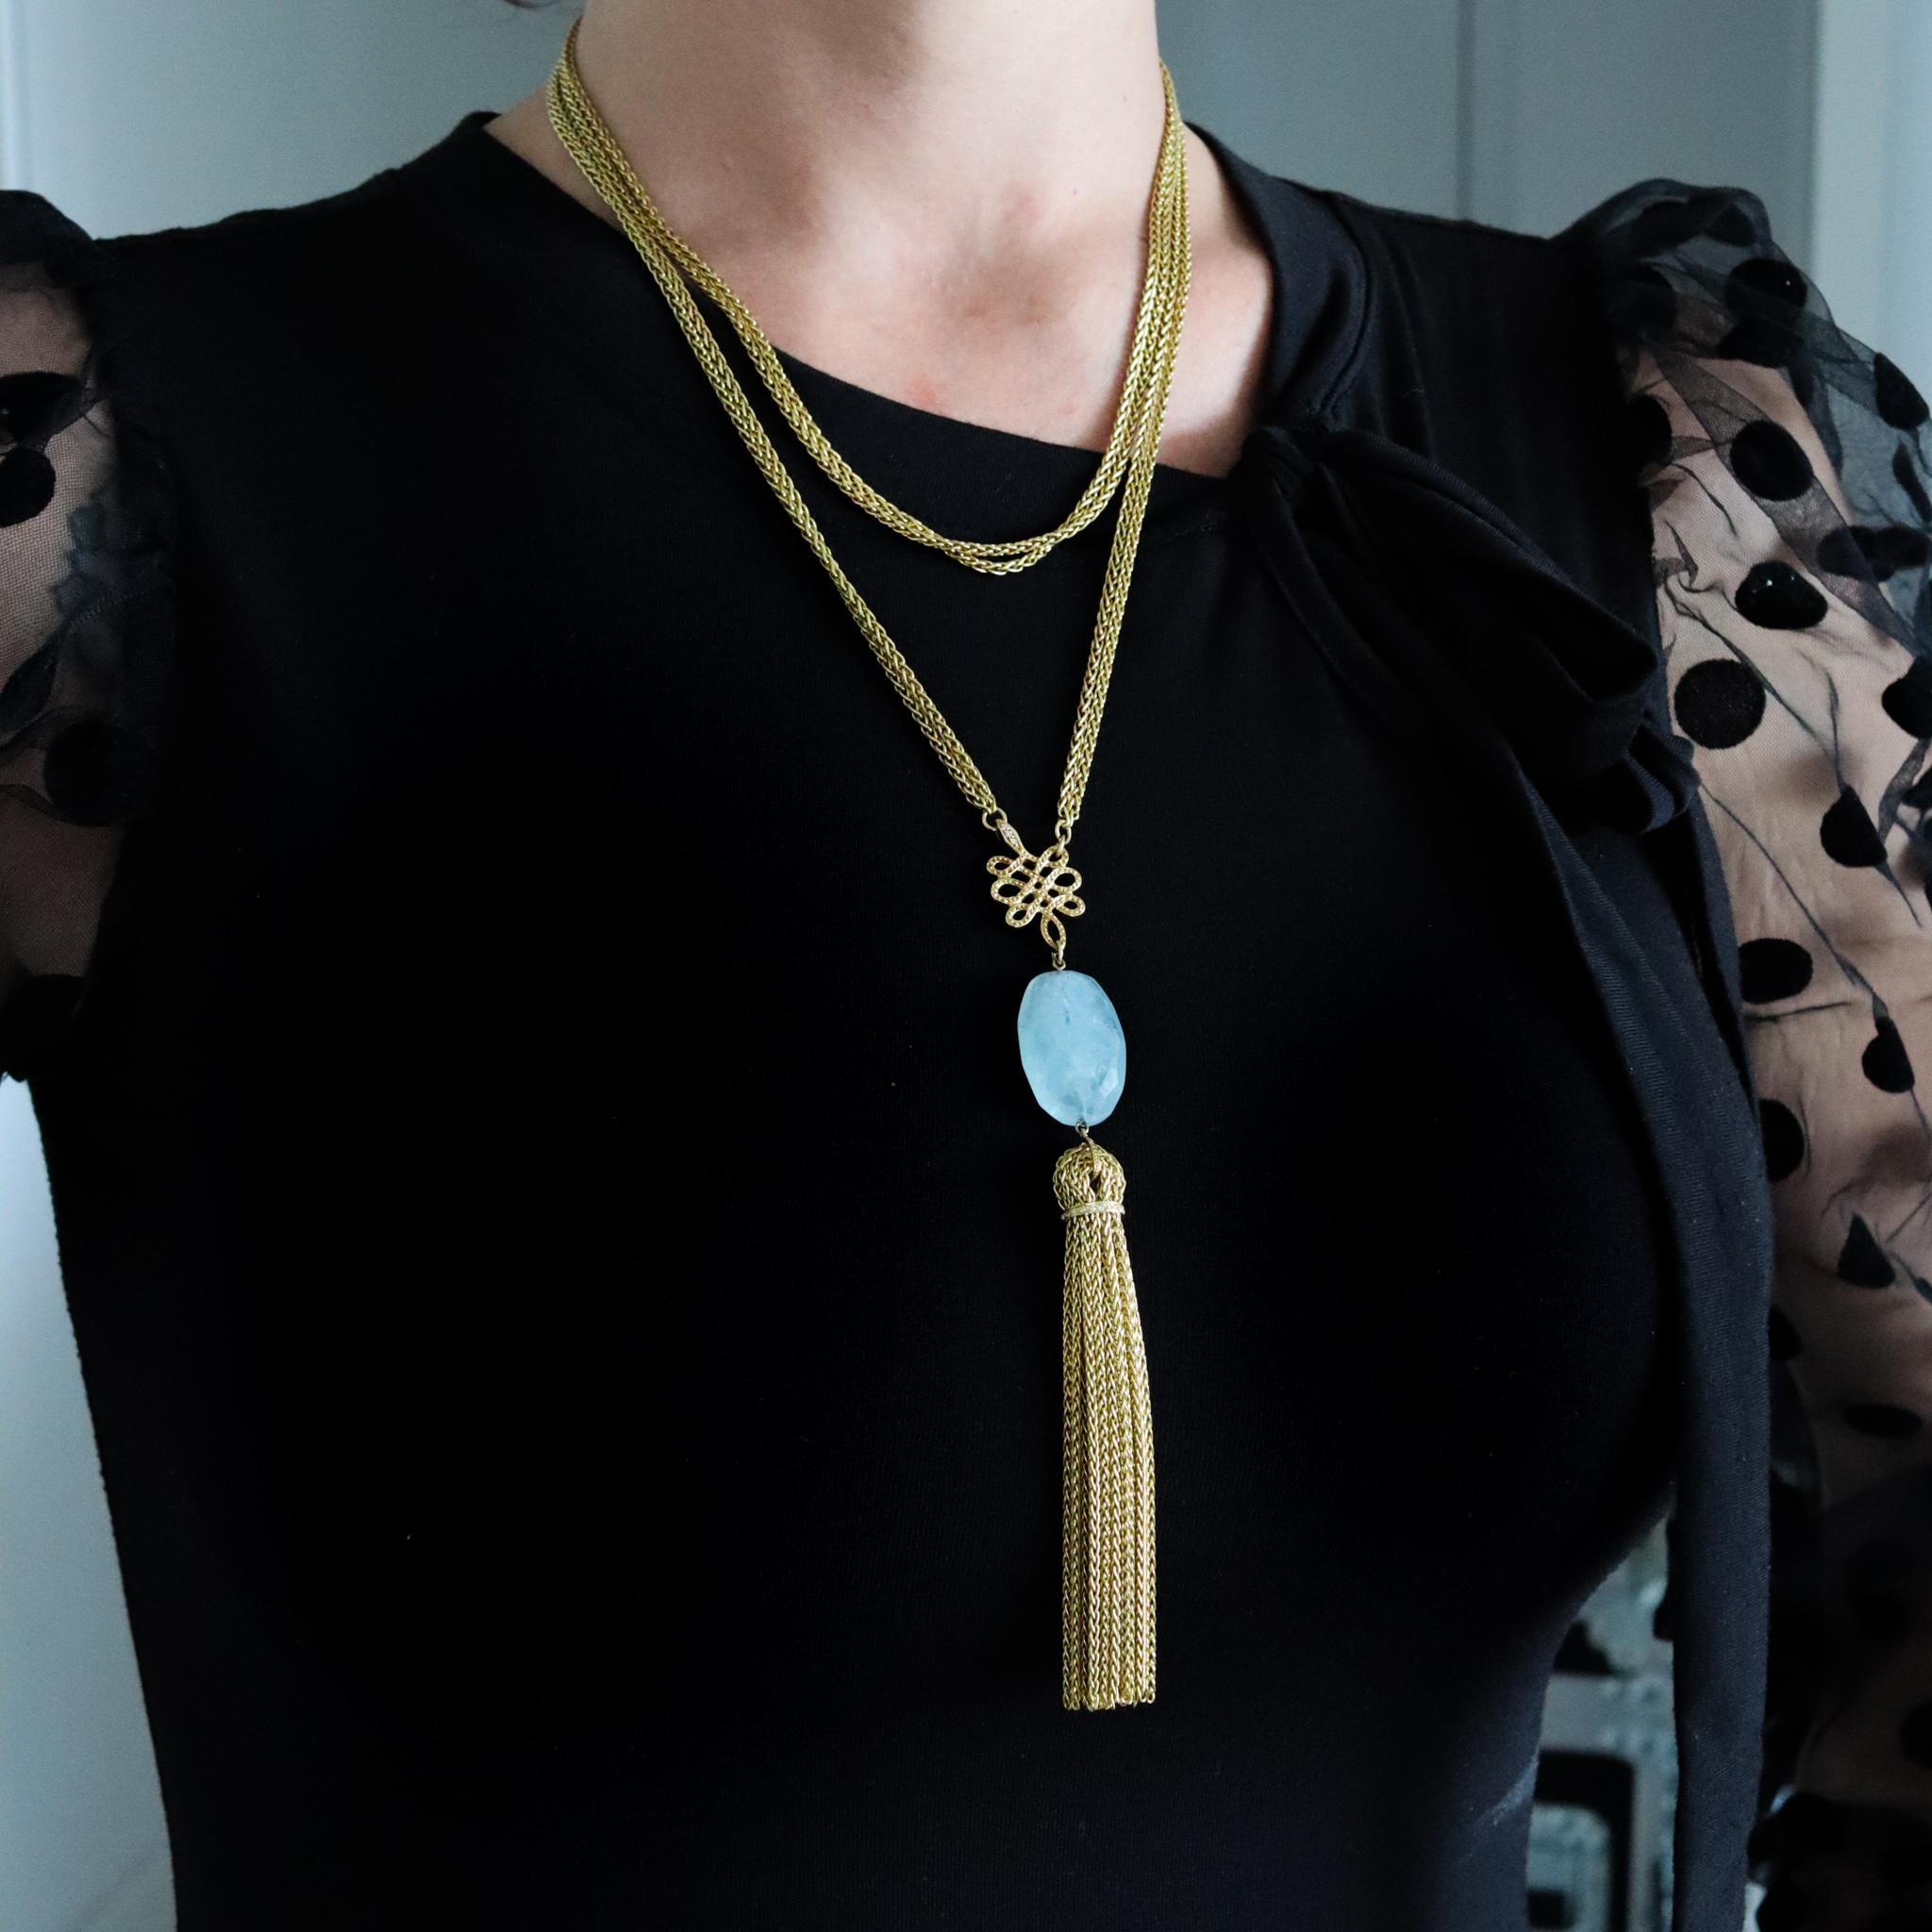 Un collier à glands conçu par Diane Von Furstenberg pour H. Stern.

Pièce très moderne créée par la maison de joaillerie brésilienne H. Stern. Ce rare sautoir a été conçu par Diane Von Furstenberg et réalisé en or jaune massif de 18 carats. Il est